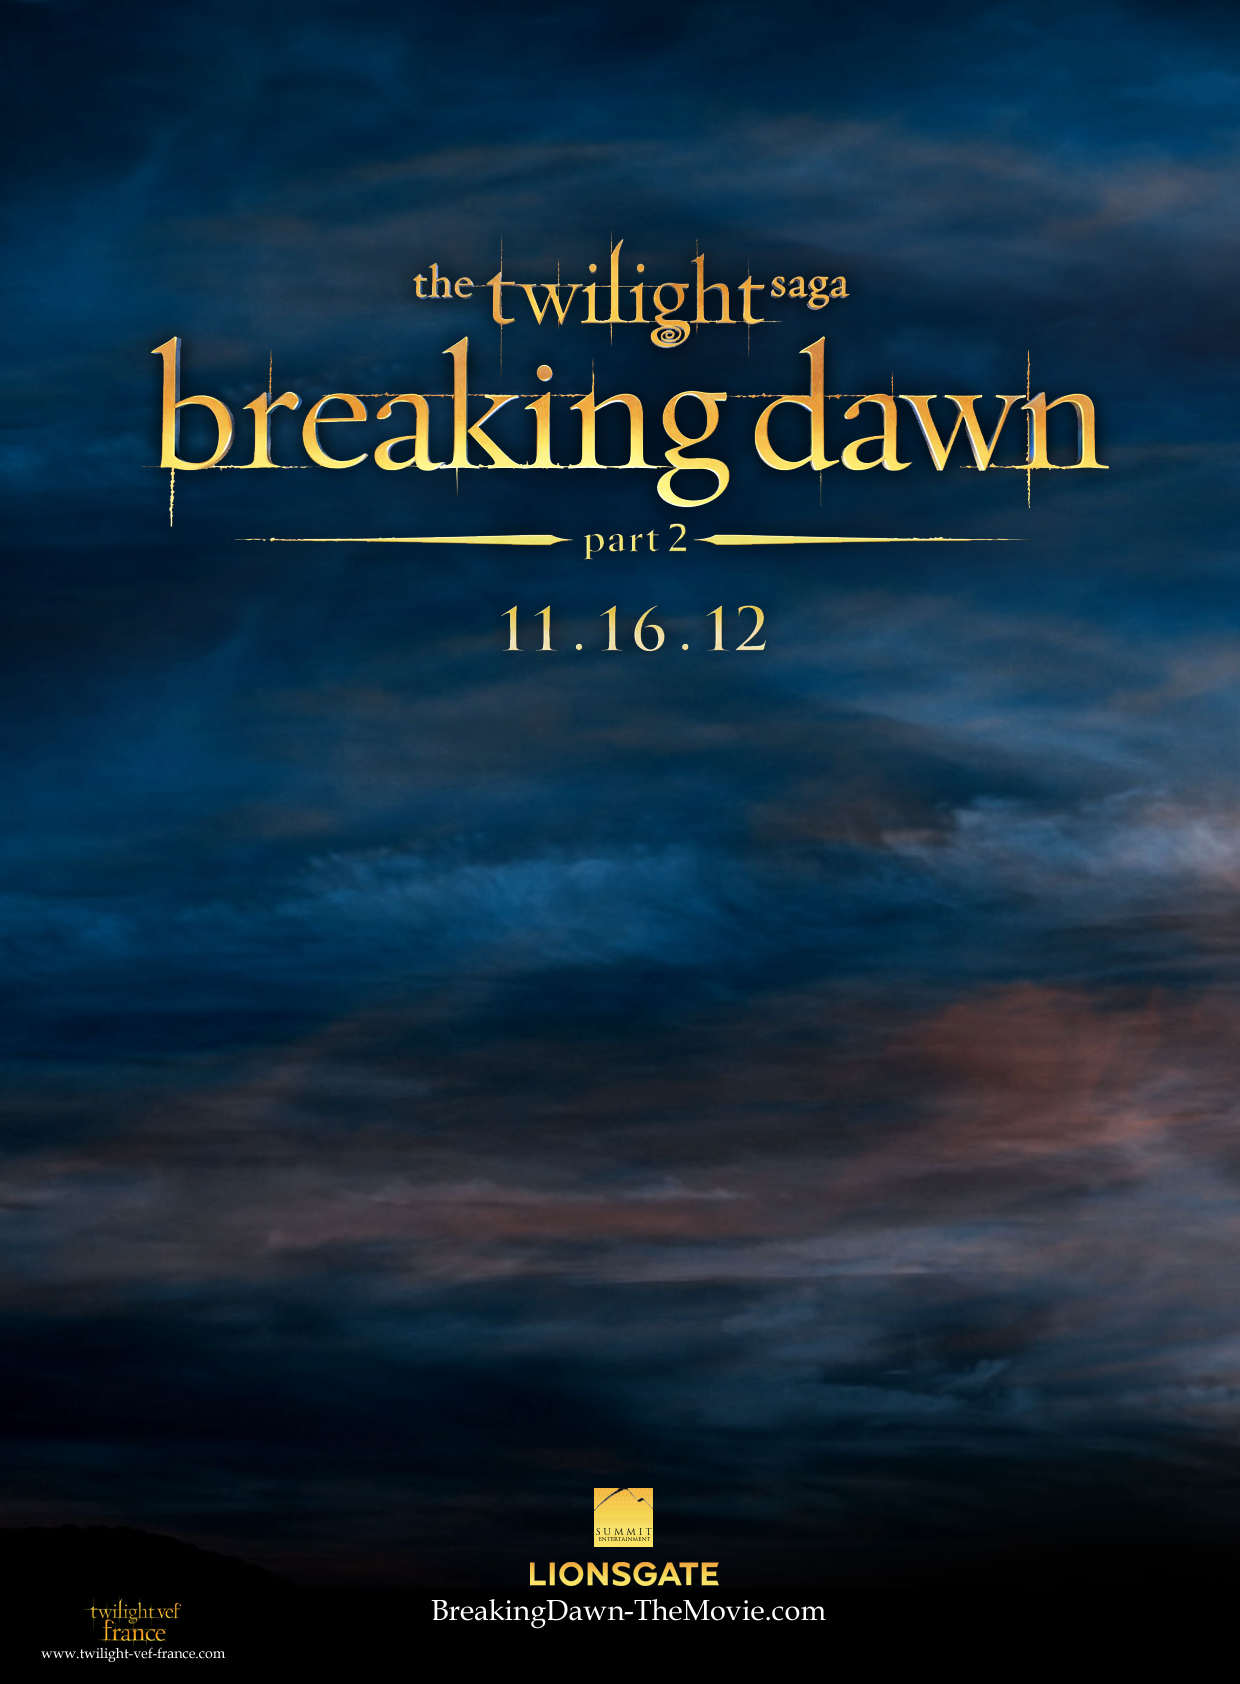 [Fanmade] Poster teaser de Breaking Dawn part 2